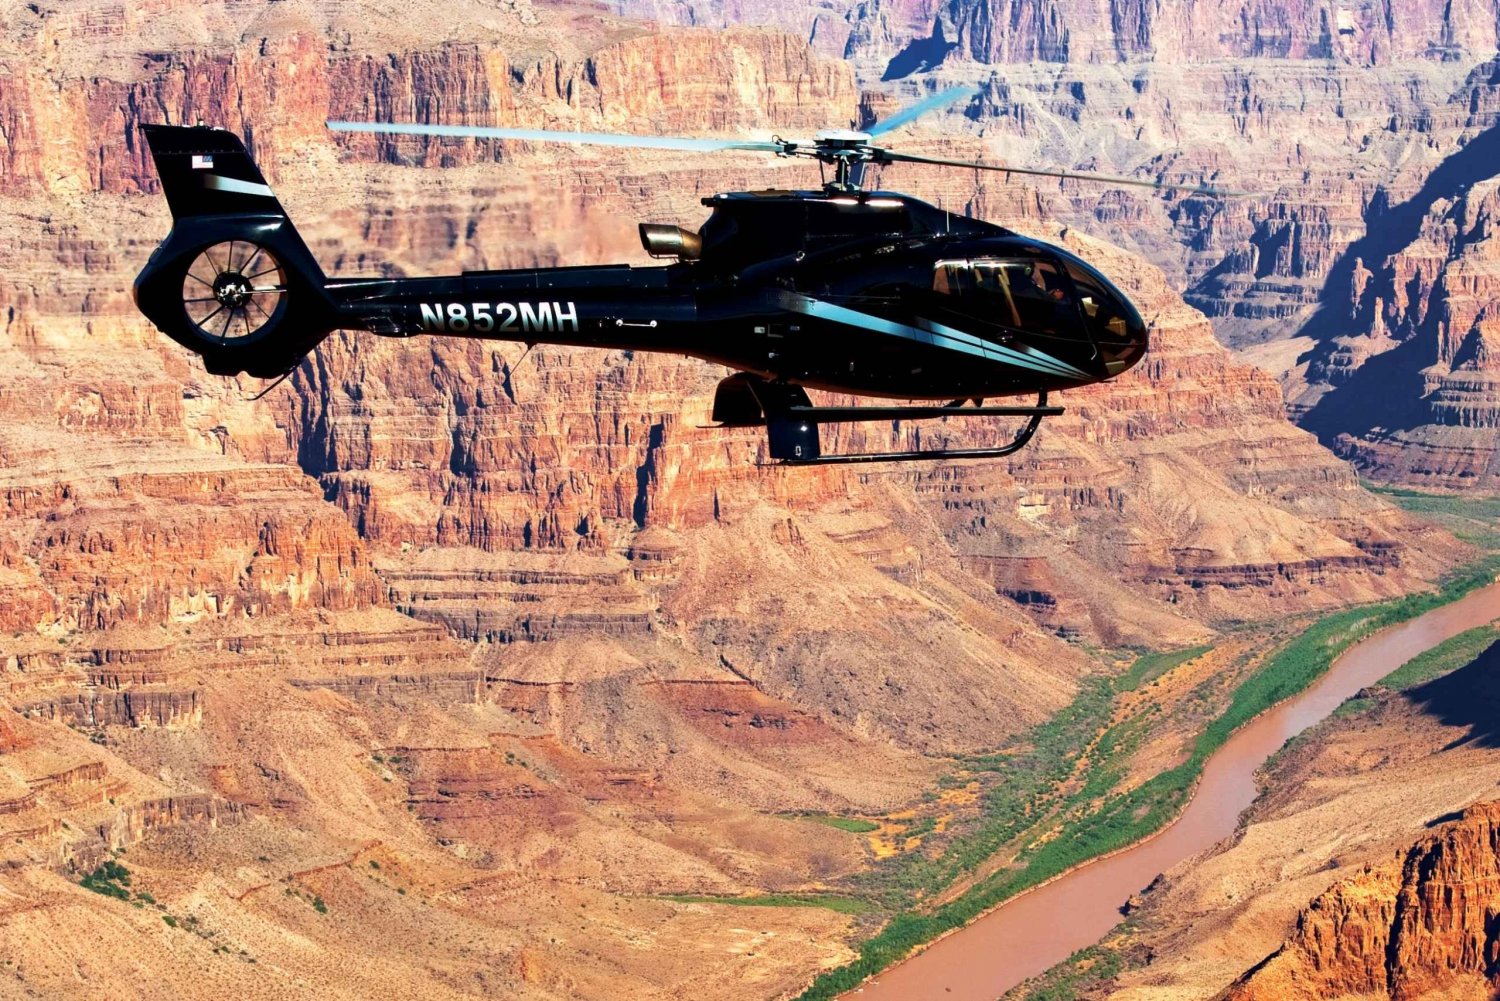 Las Vegas: West Grand Canyon Hubschrauber Ticket mit Transfer